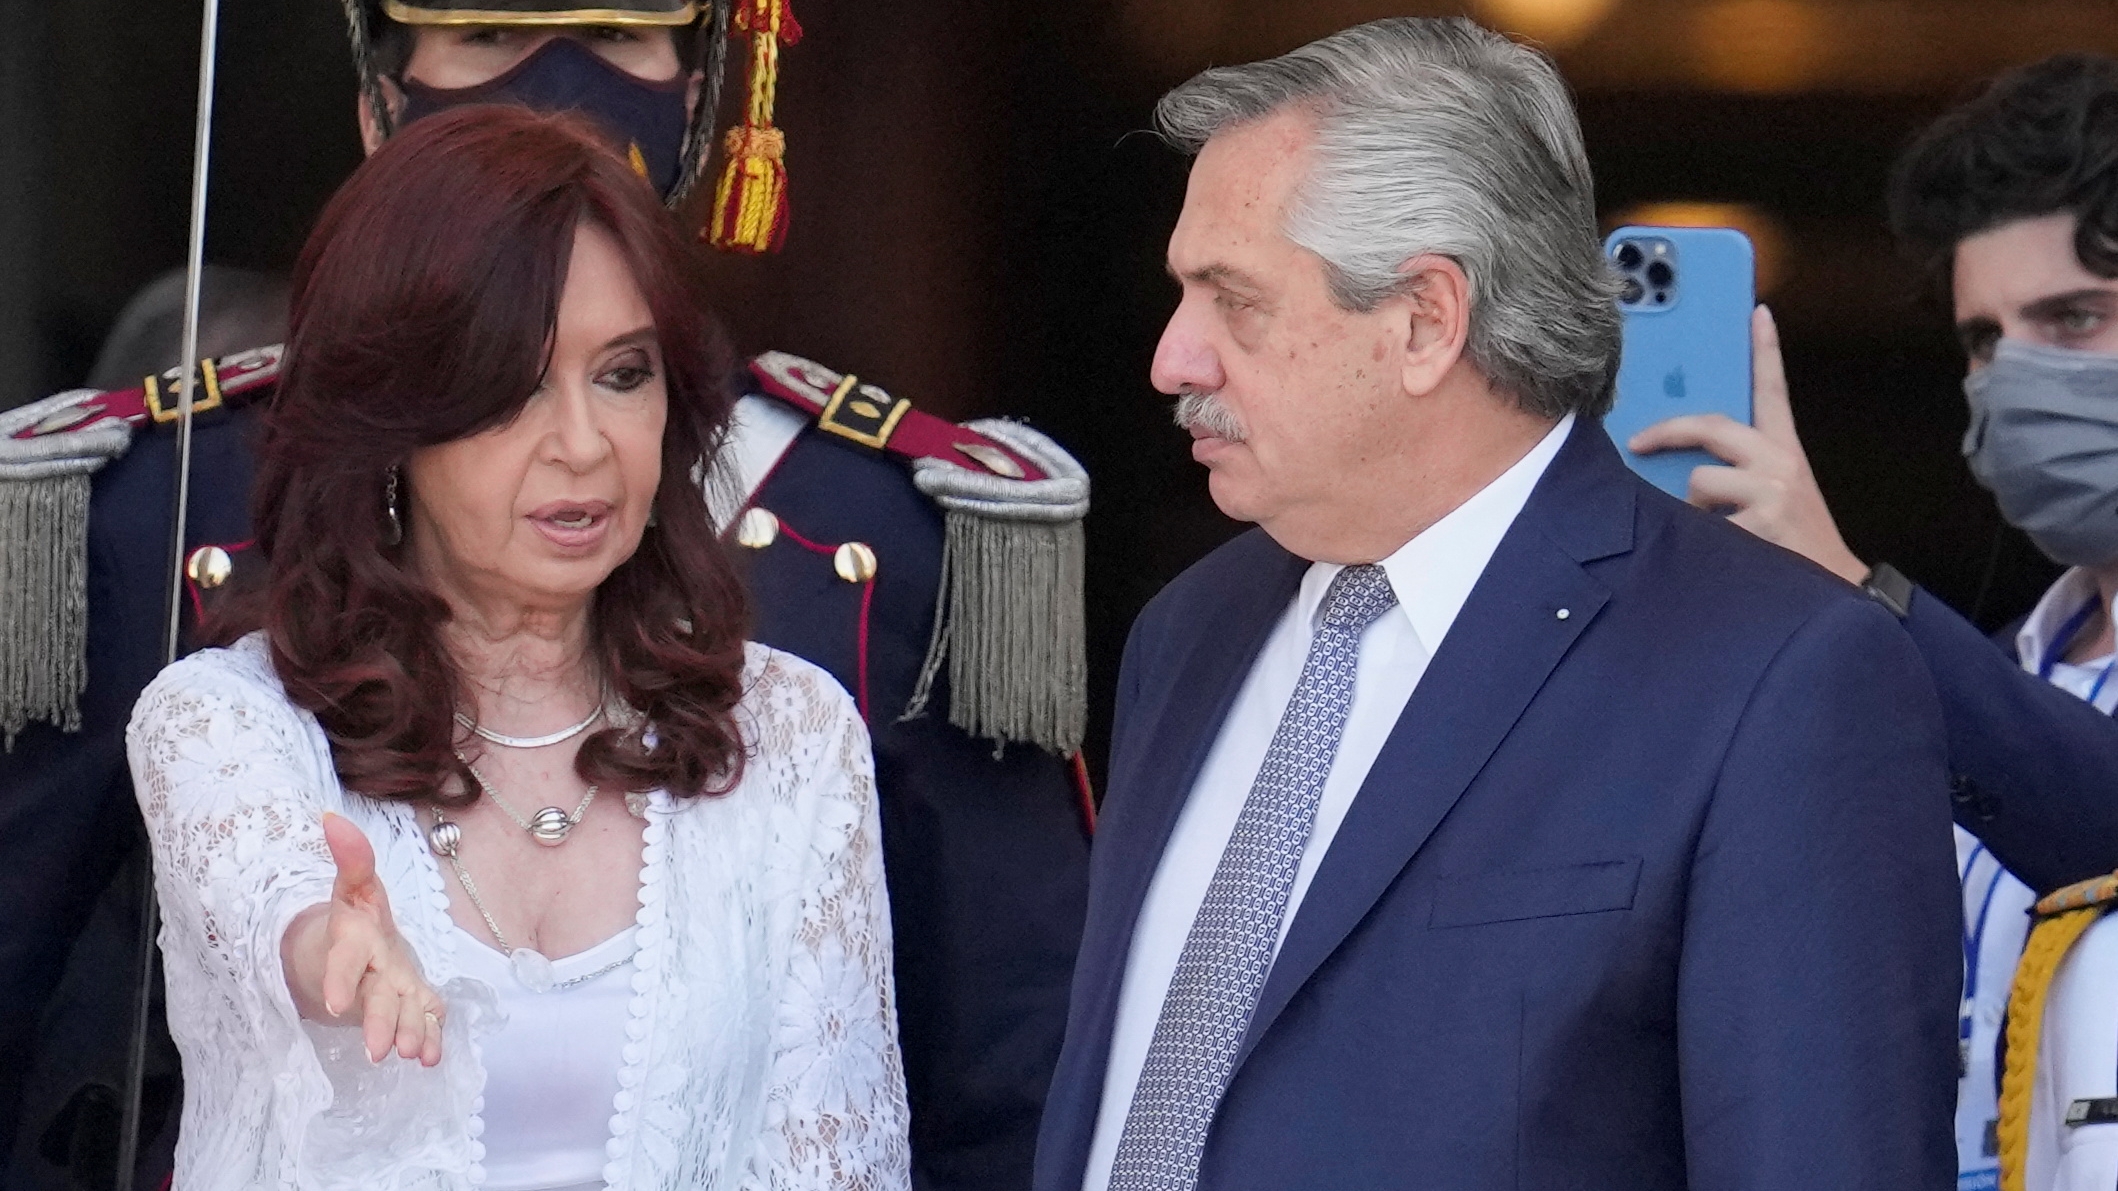 Alberto Fernández apuesta a la mesa electoral para fortalecer su agenda política ante la ofensiva silenciosa que lidera Cristina Kirchner